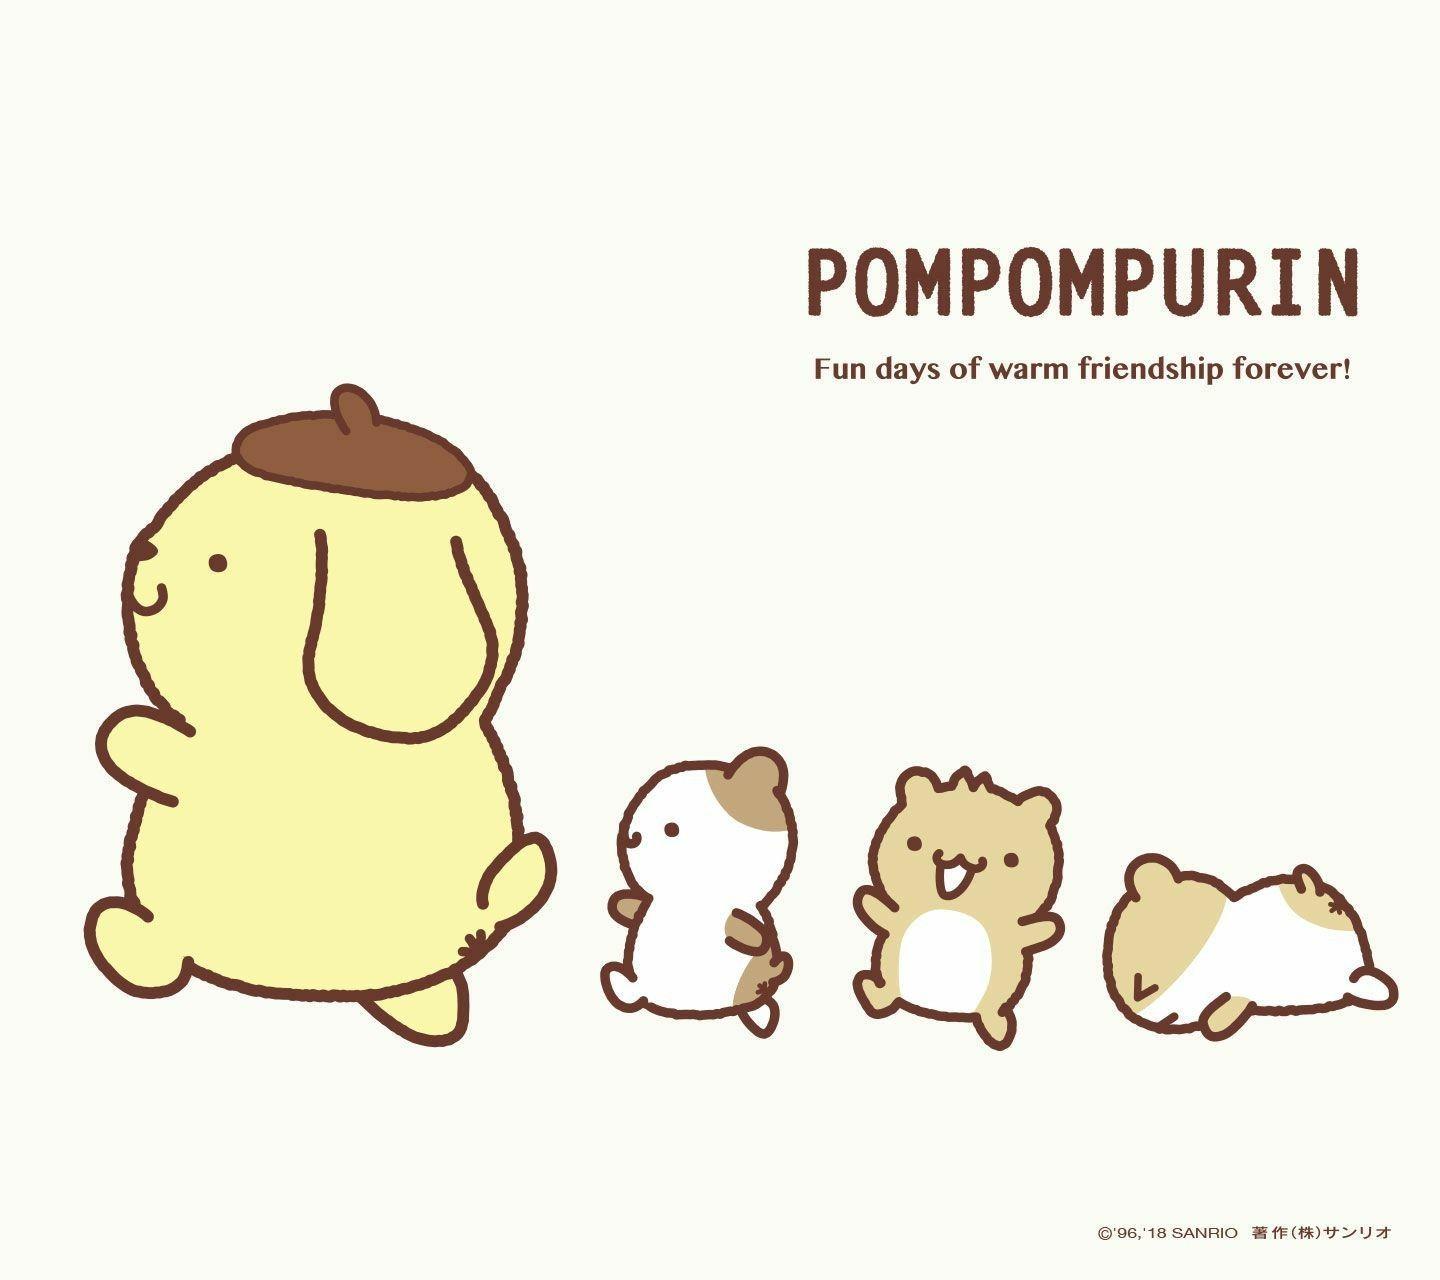 Pompompurin Wallpaper. Pom Pom Purin. Wallpaper, Sanrio, Sanrio